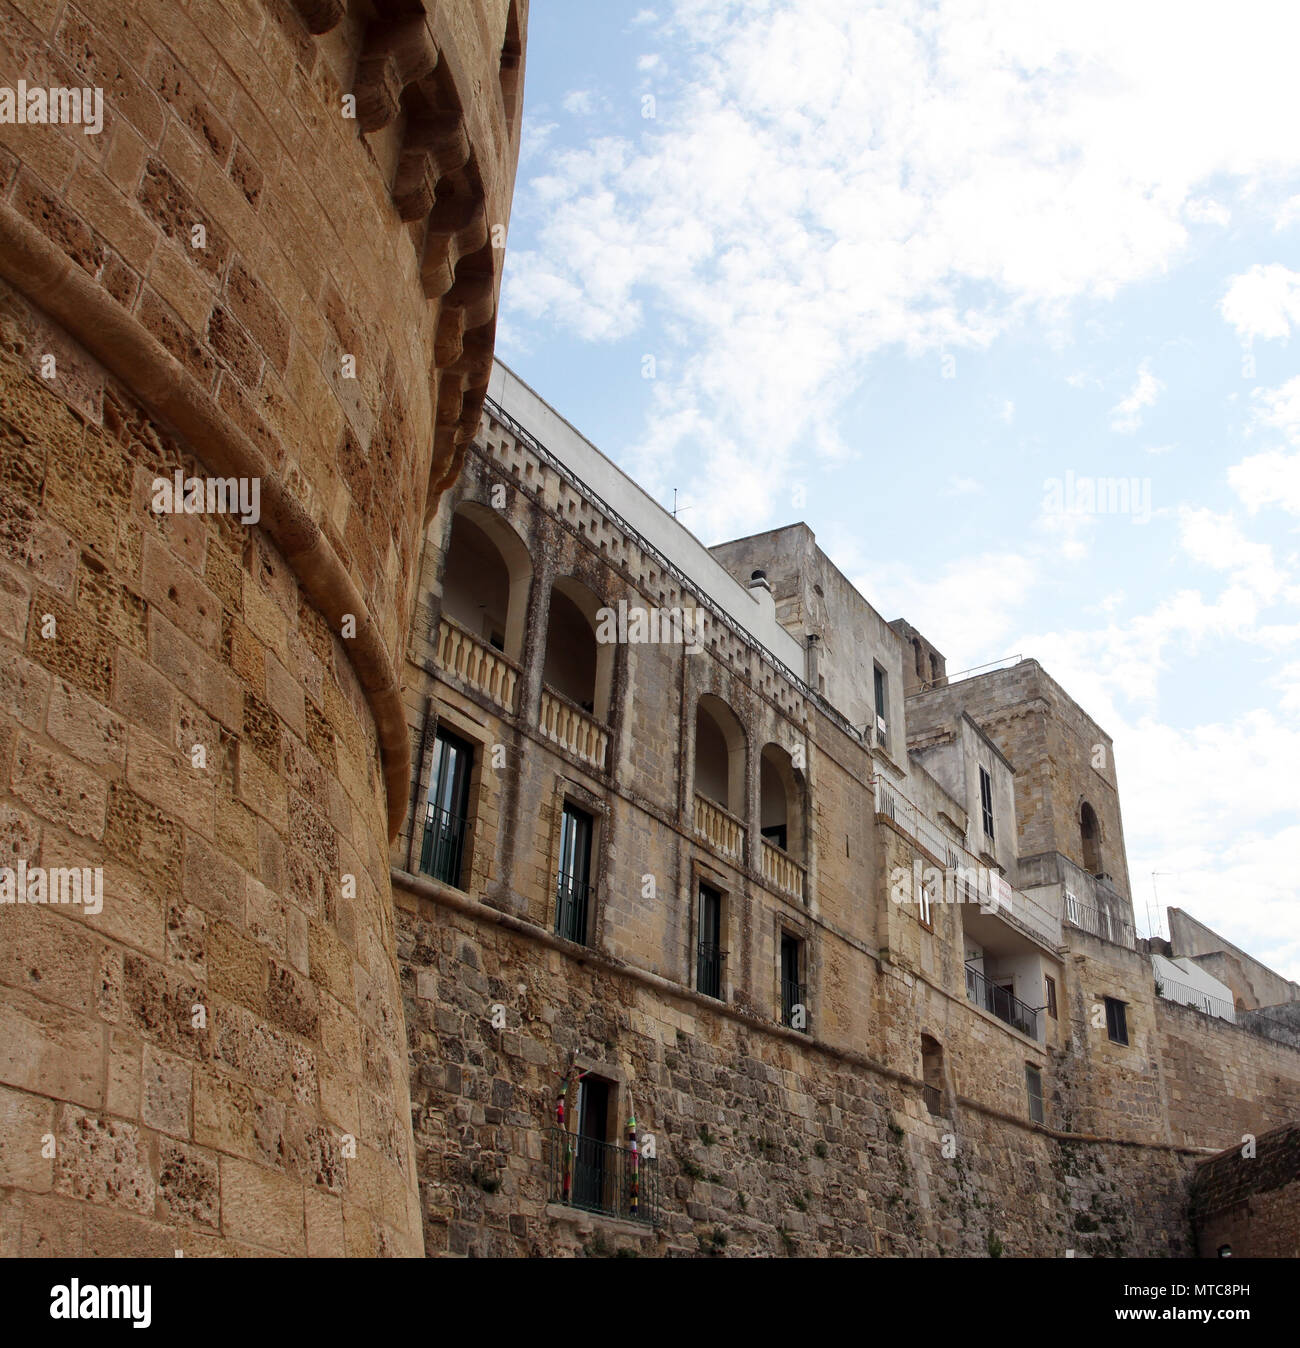 El Castillo de Otranto - Corigliano d'Otranto, Puglia, Italia. Una fachada barroca construida durante el siglo XVII con ménsulas decorativos y anthropomorphi Foto de stock